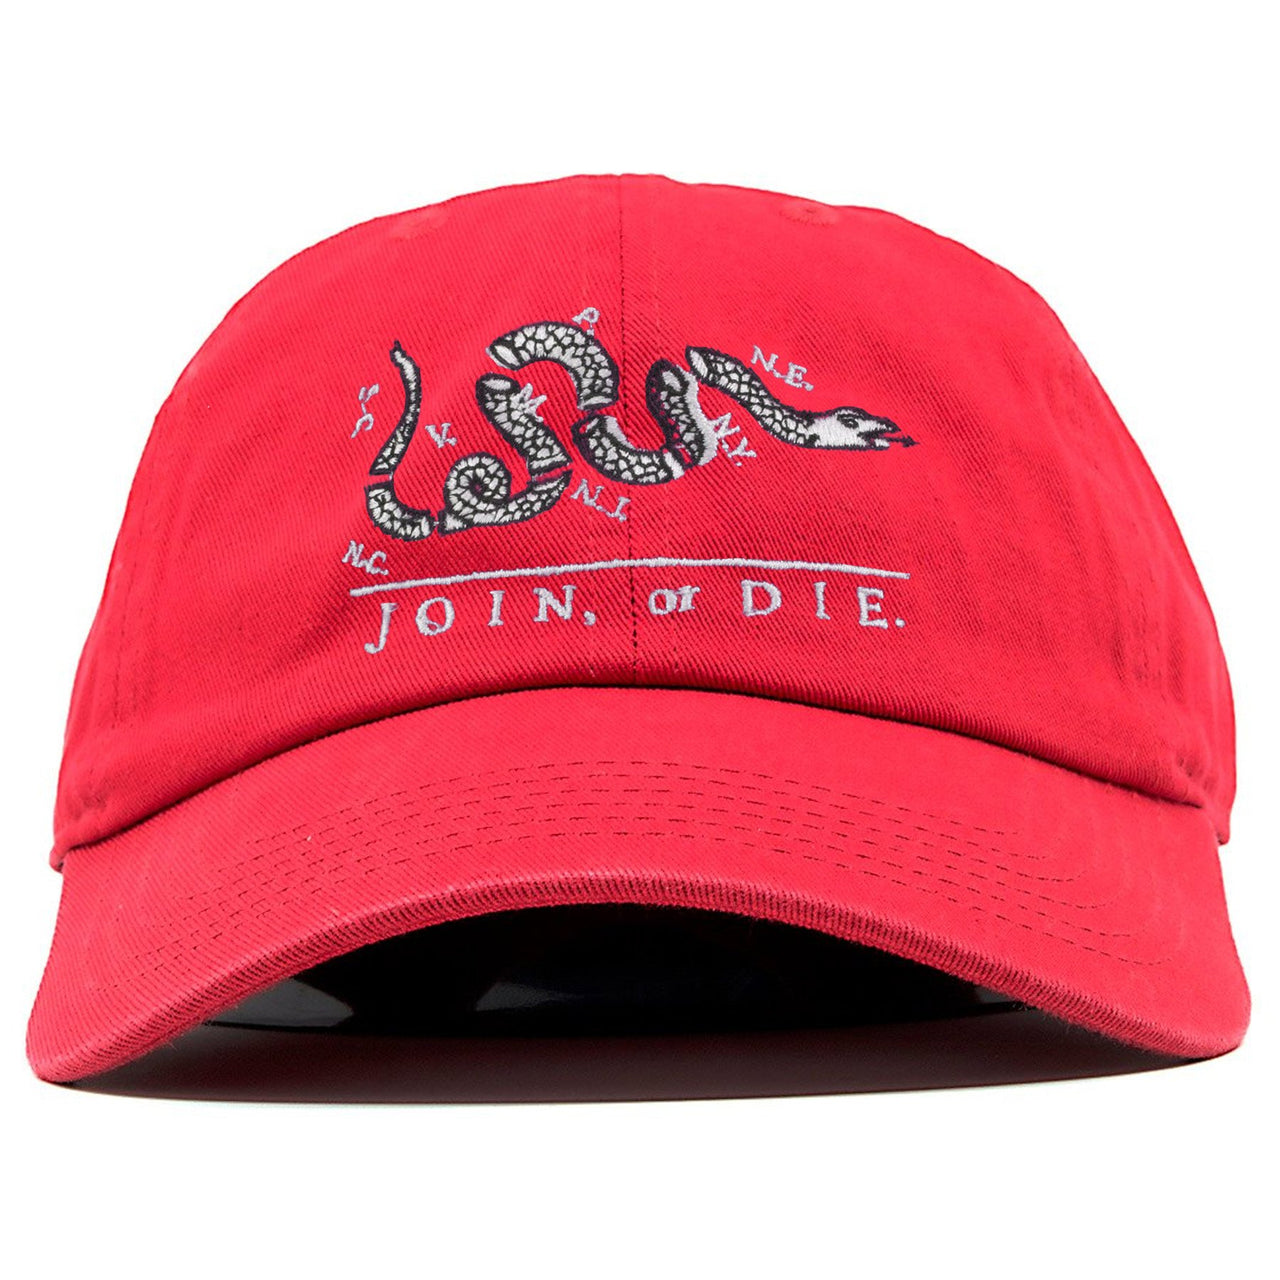 Snakeskin Foam Ones Dad Hat | Join or Die, Red